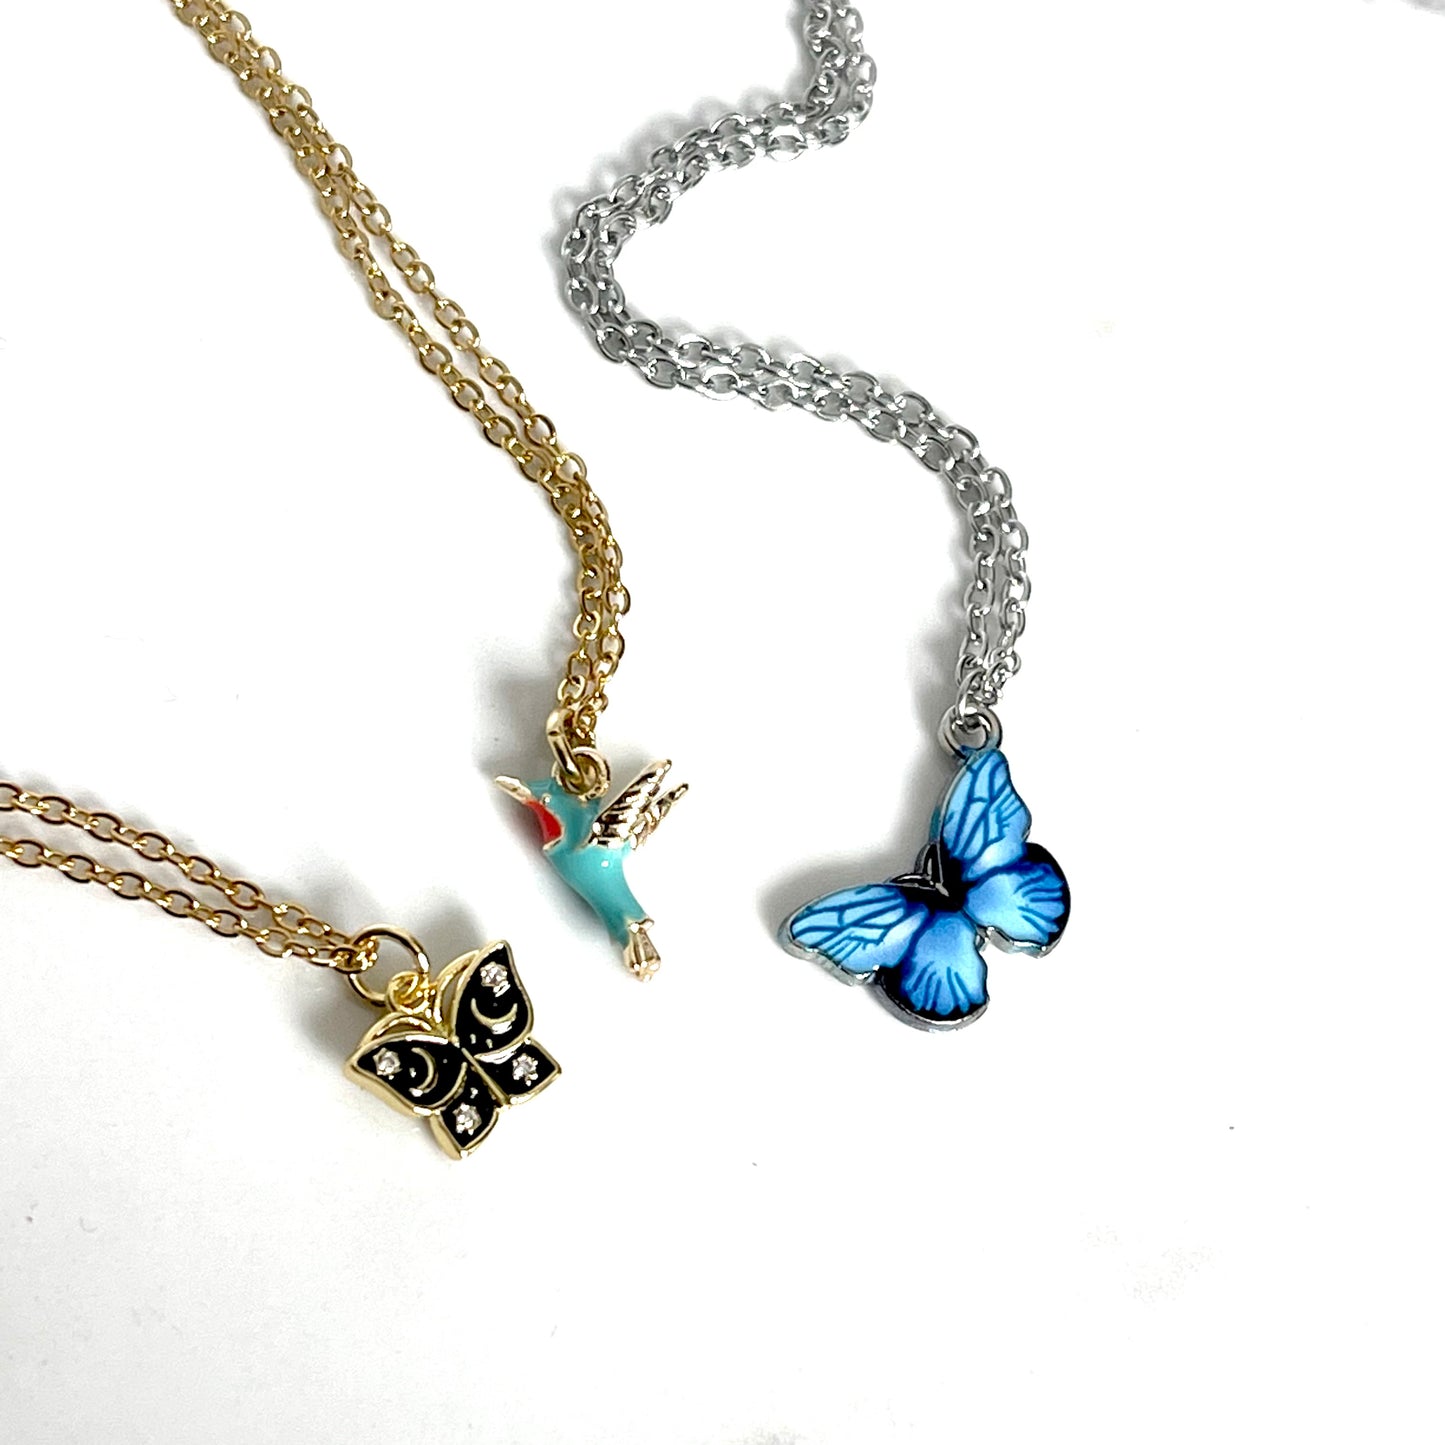 Celestial Black Butterfly Necklace